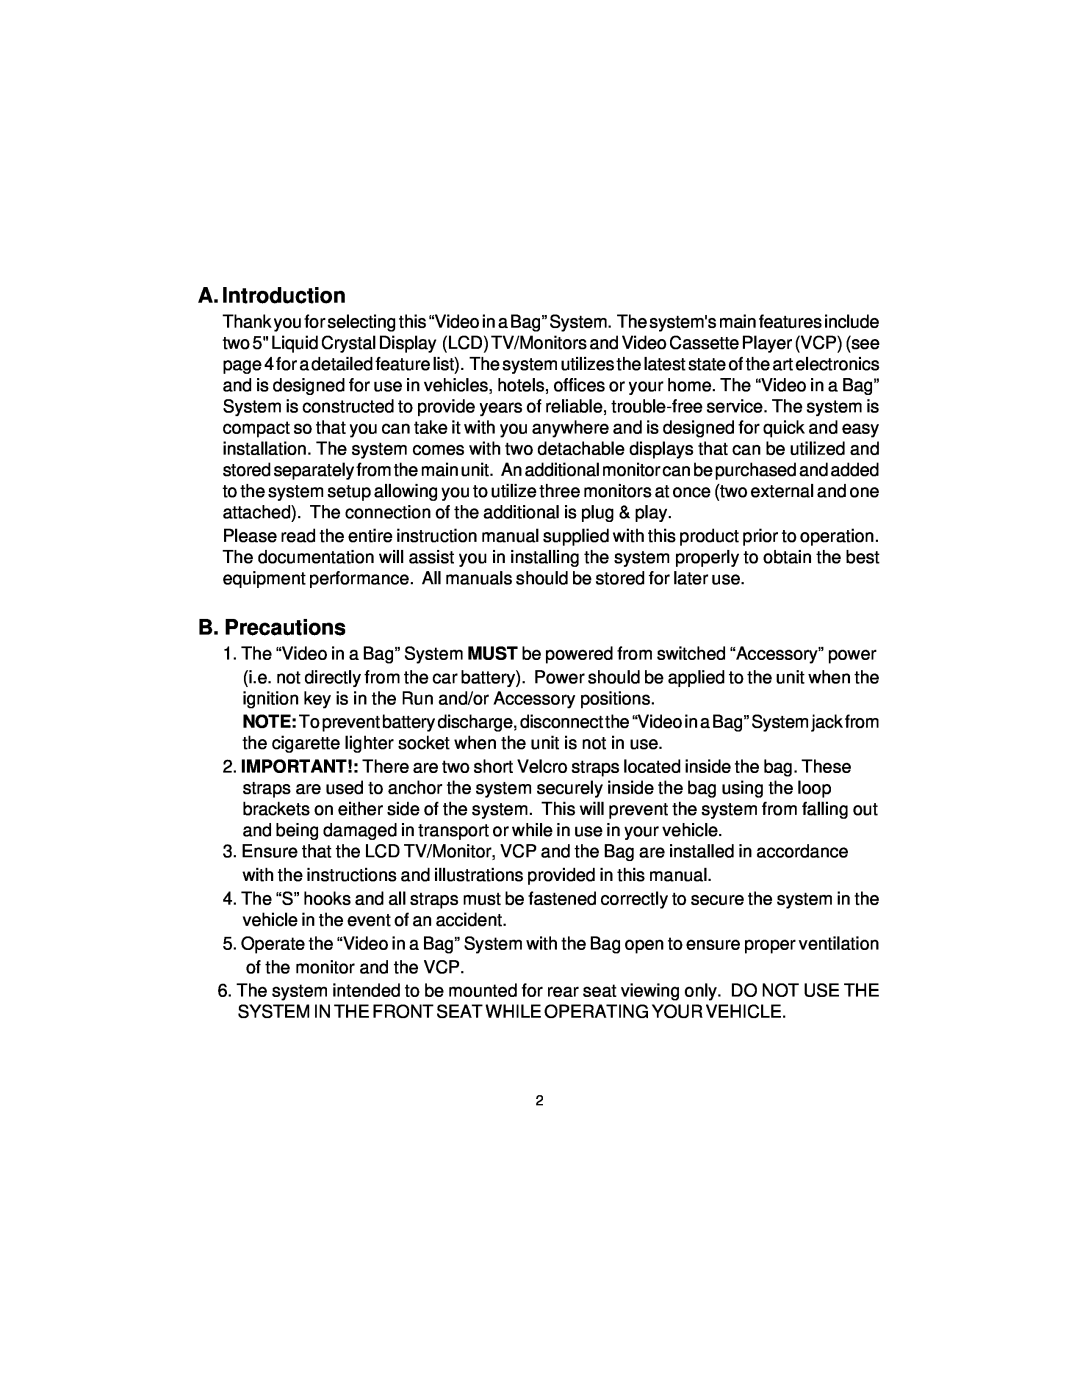 Pelco VBP3000 manual A. Introduction, B. Precautions 